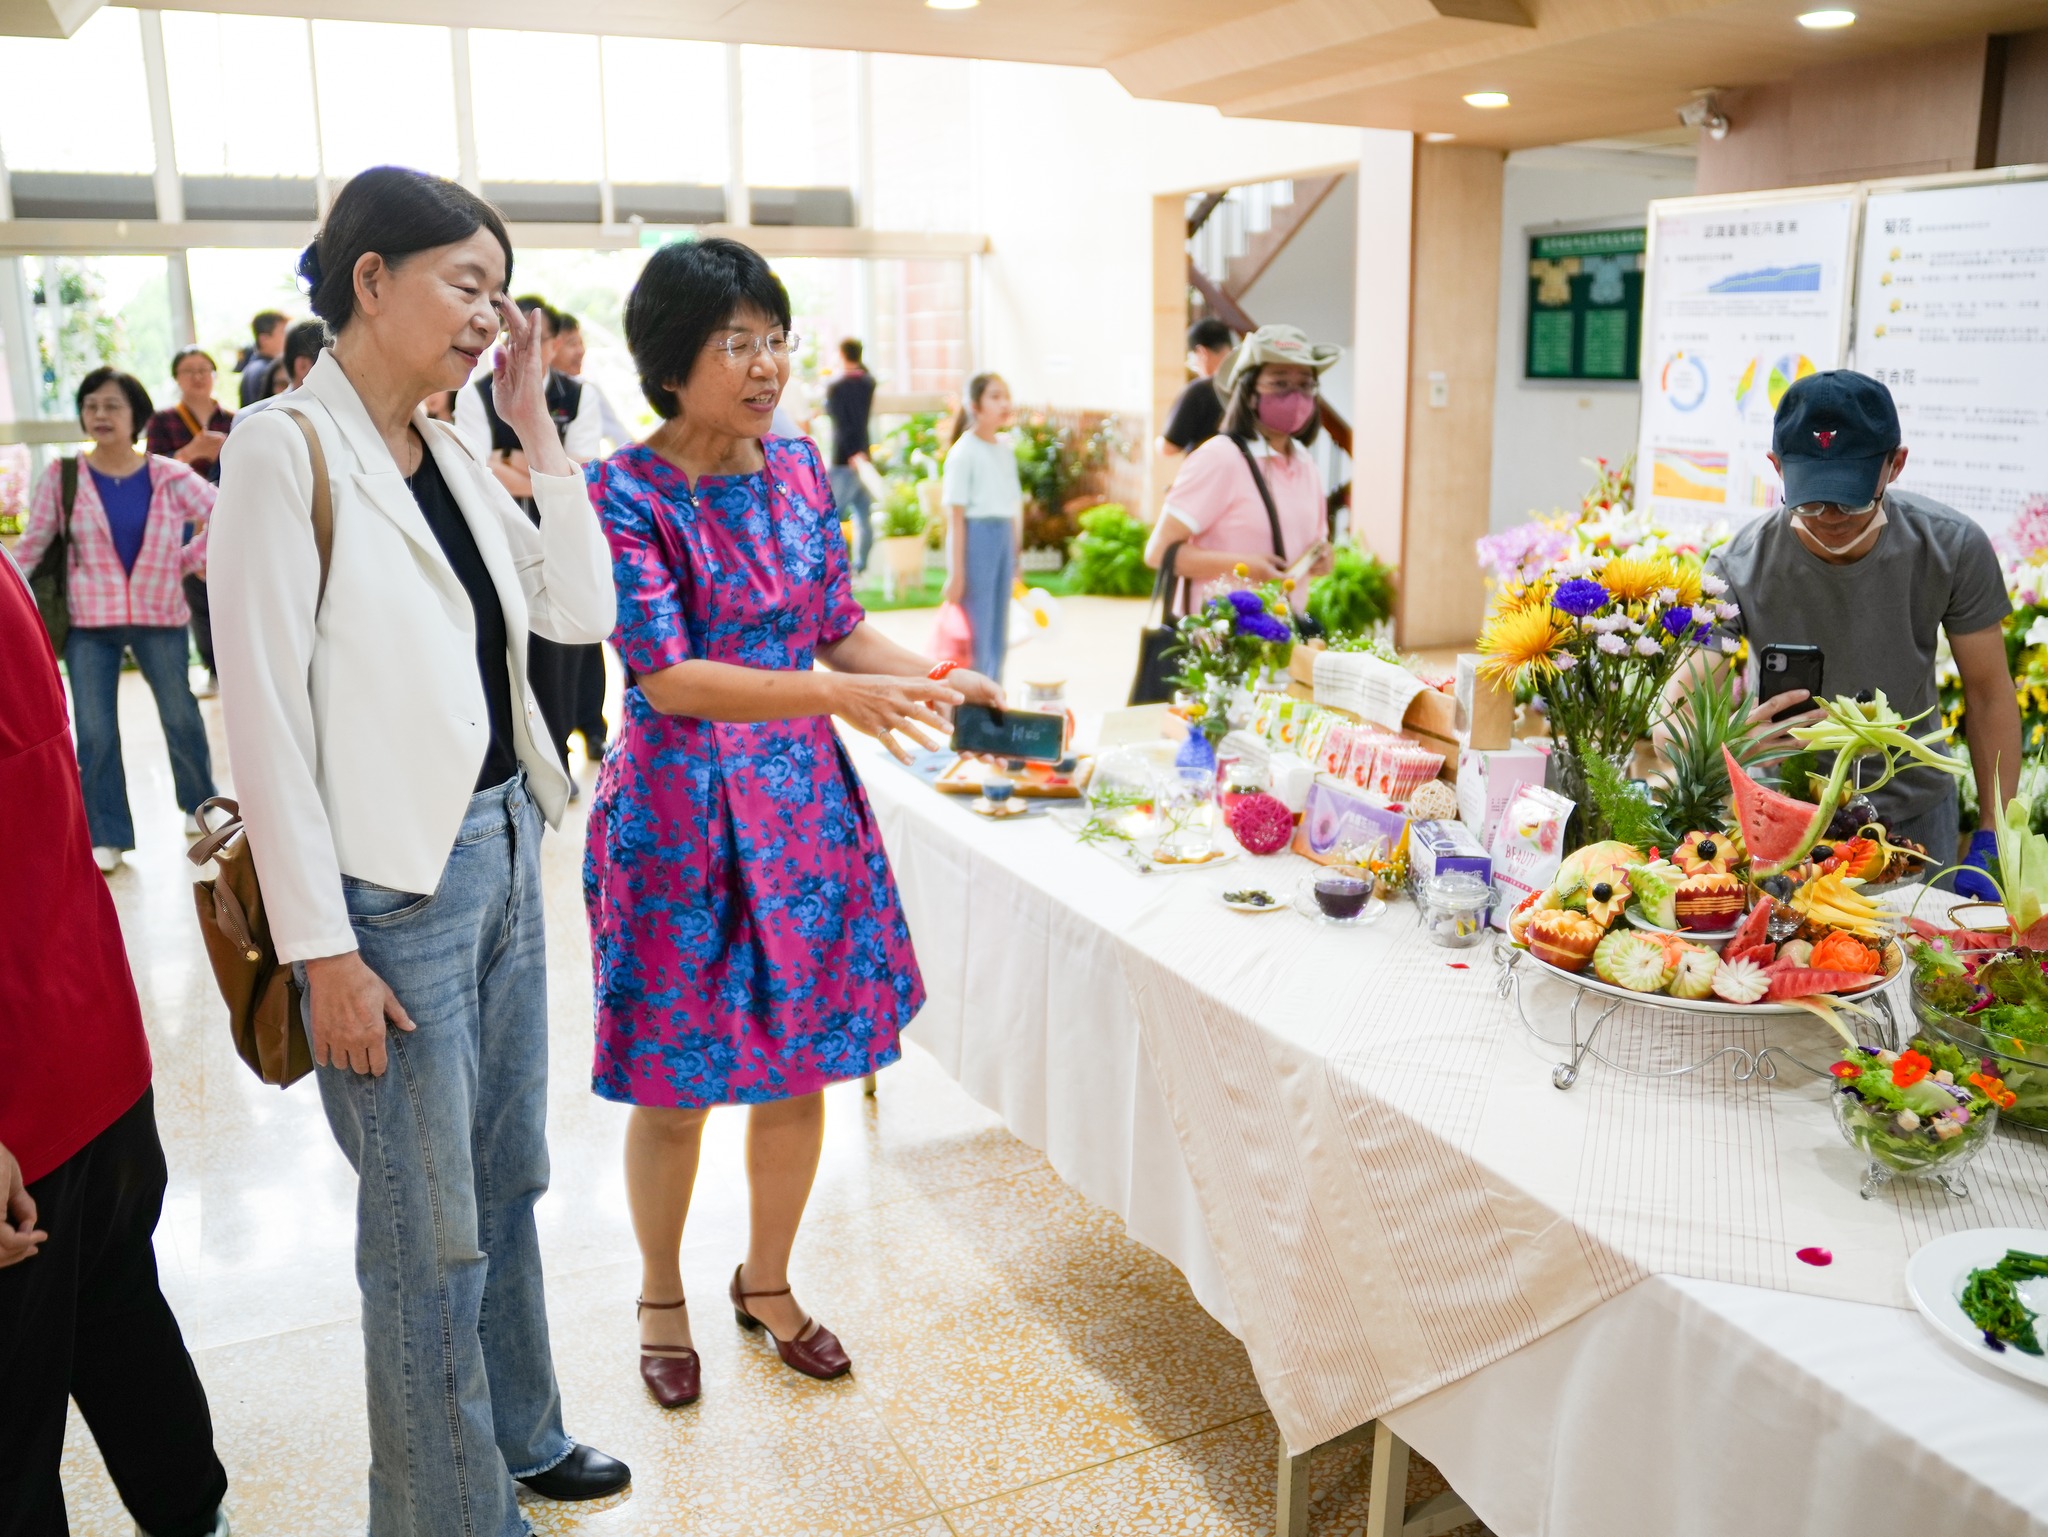 楊宏瑛場長(右)向農業部范美玲主秘(左)介紹花花世界區展示之花與飲食餐桌。